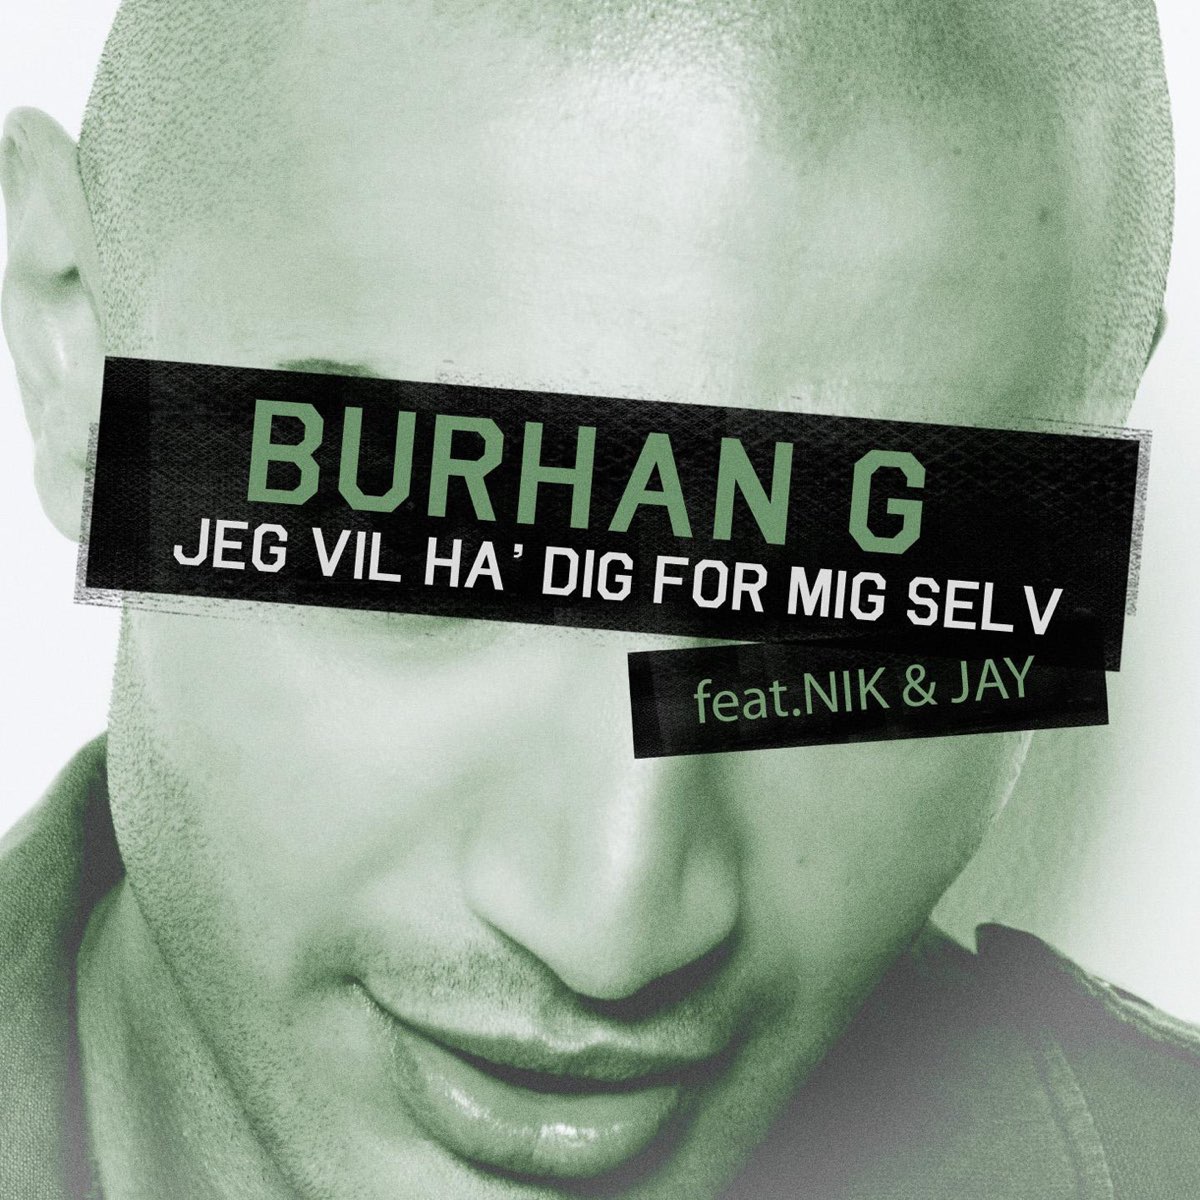 Jeg Vil Ha' Dig For Mig Selv (feat. Nik & Jay) - Single by Burhan G on Apple